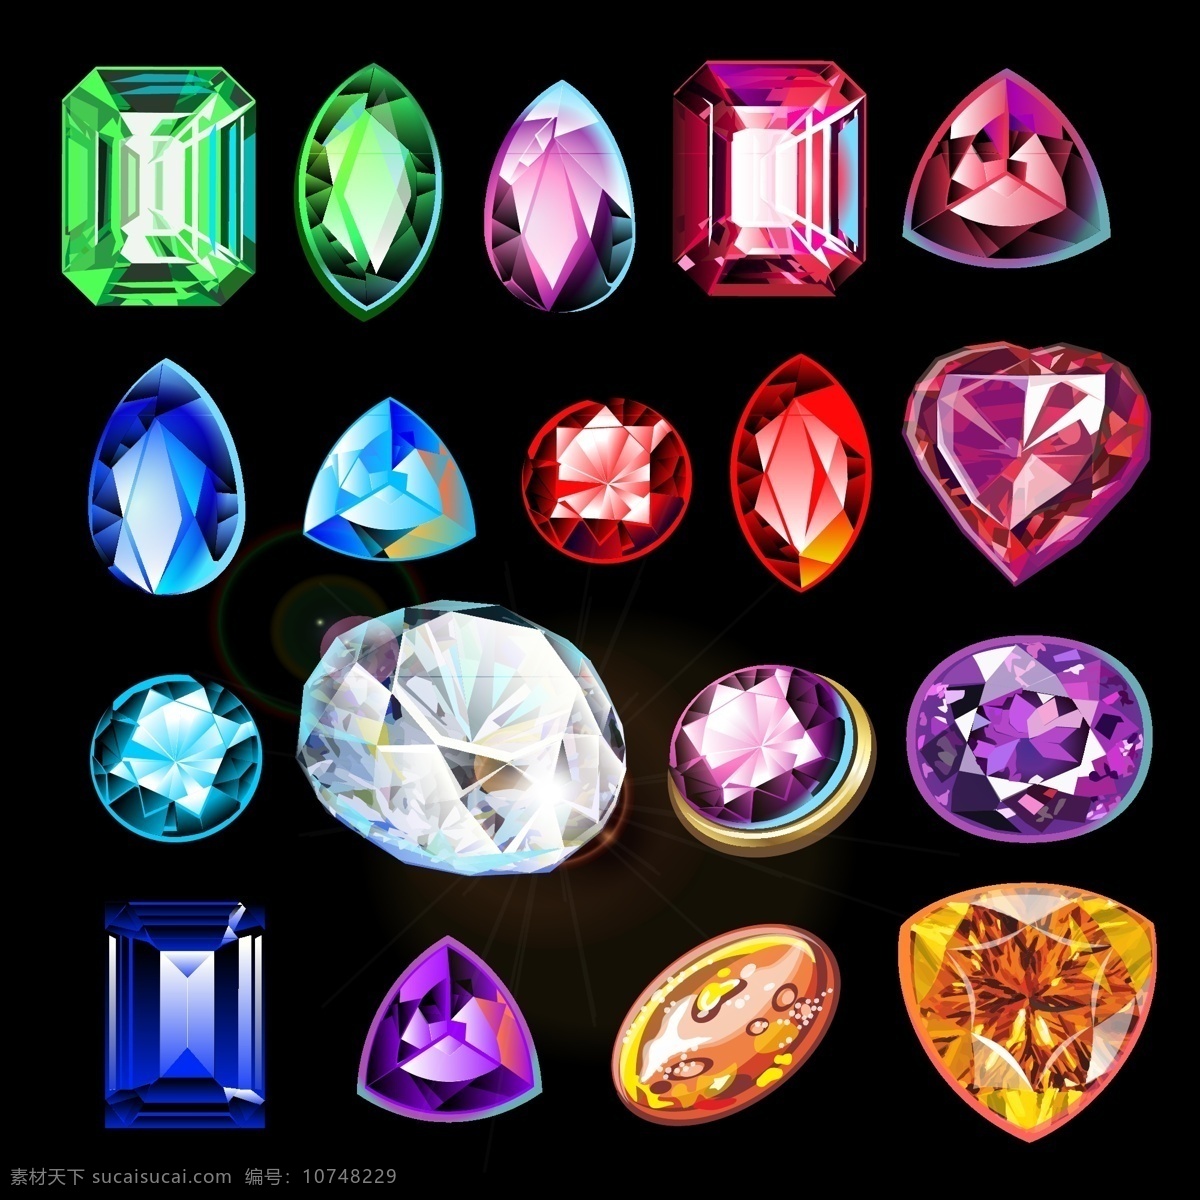 彩色钻石 彩色 钻石宝石 钻石 宝石 亮晶晶 闪耀 光彩夺目 晶莹剔透 天然矿石 珍贵 稀有 饰品 黑色